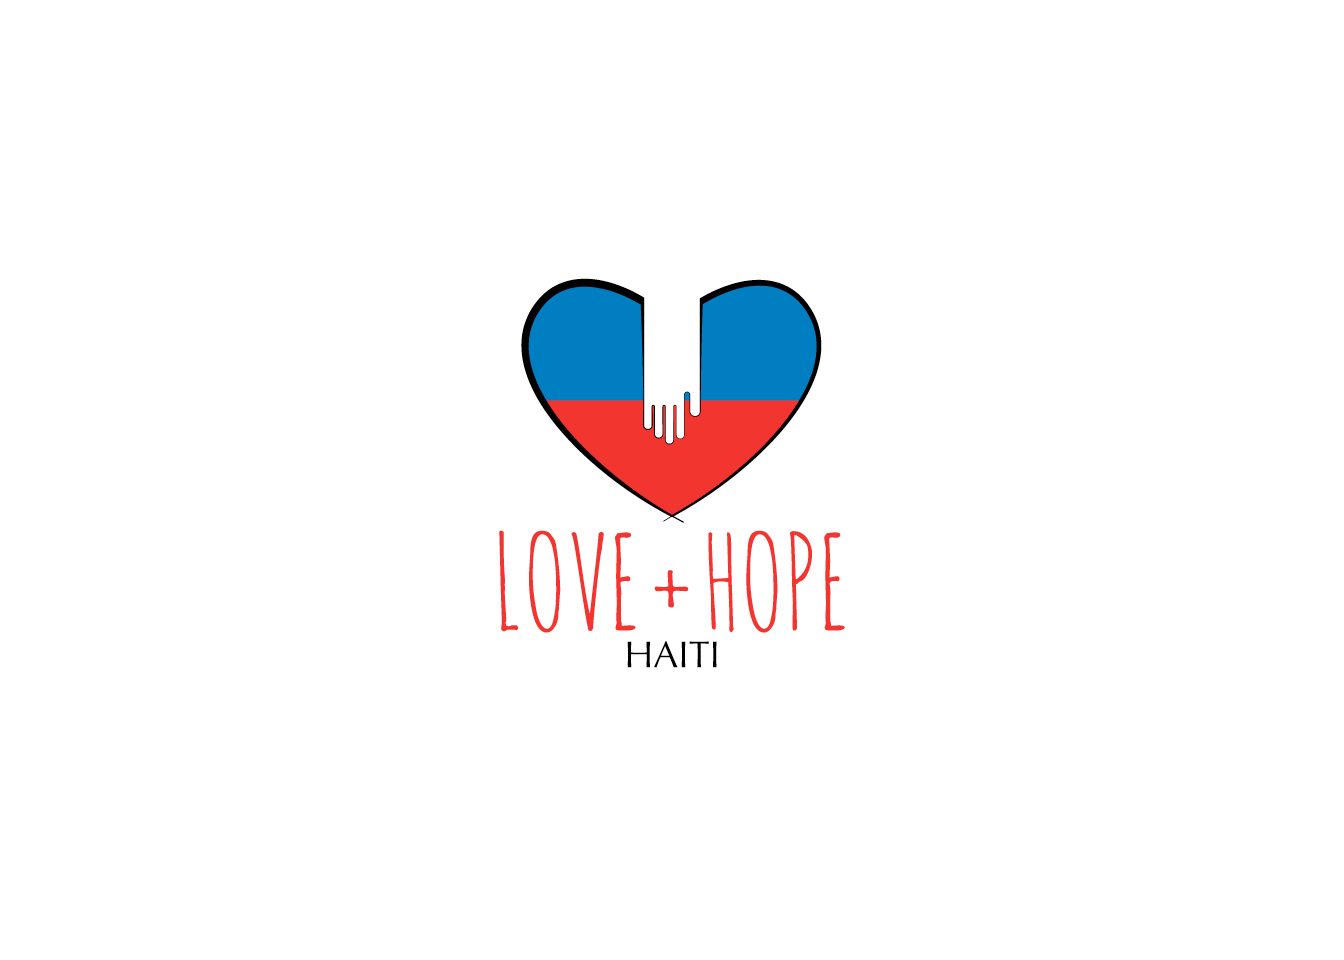 Love + Hope Haiti